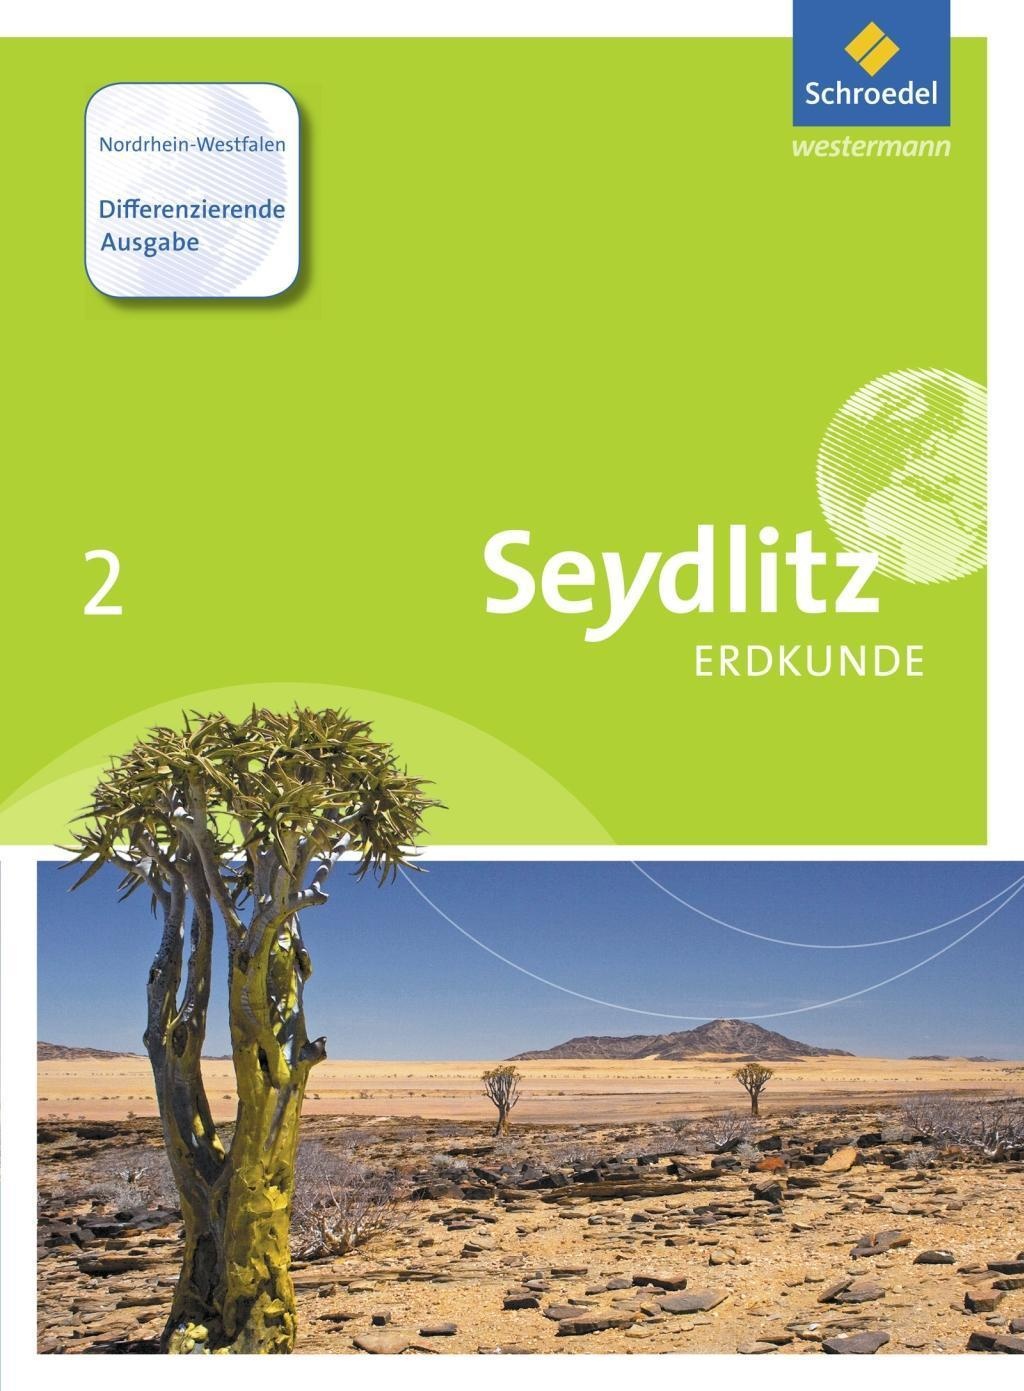 Seydlitz Erdkunde  Differenzierende Ausgabe Nordrhein-Westfalen 2015: 2 Seydlitz Erdkunde - Differenzierende Ausgabe  Gebunden